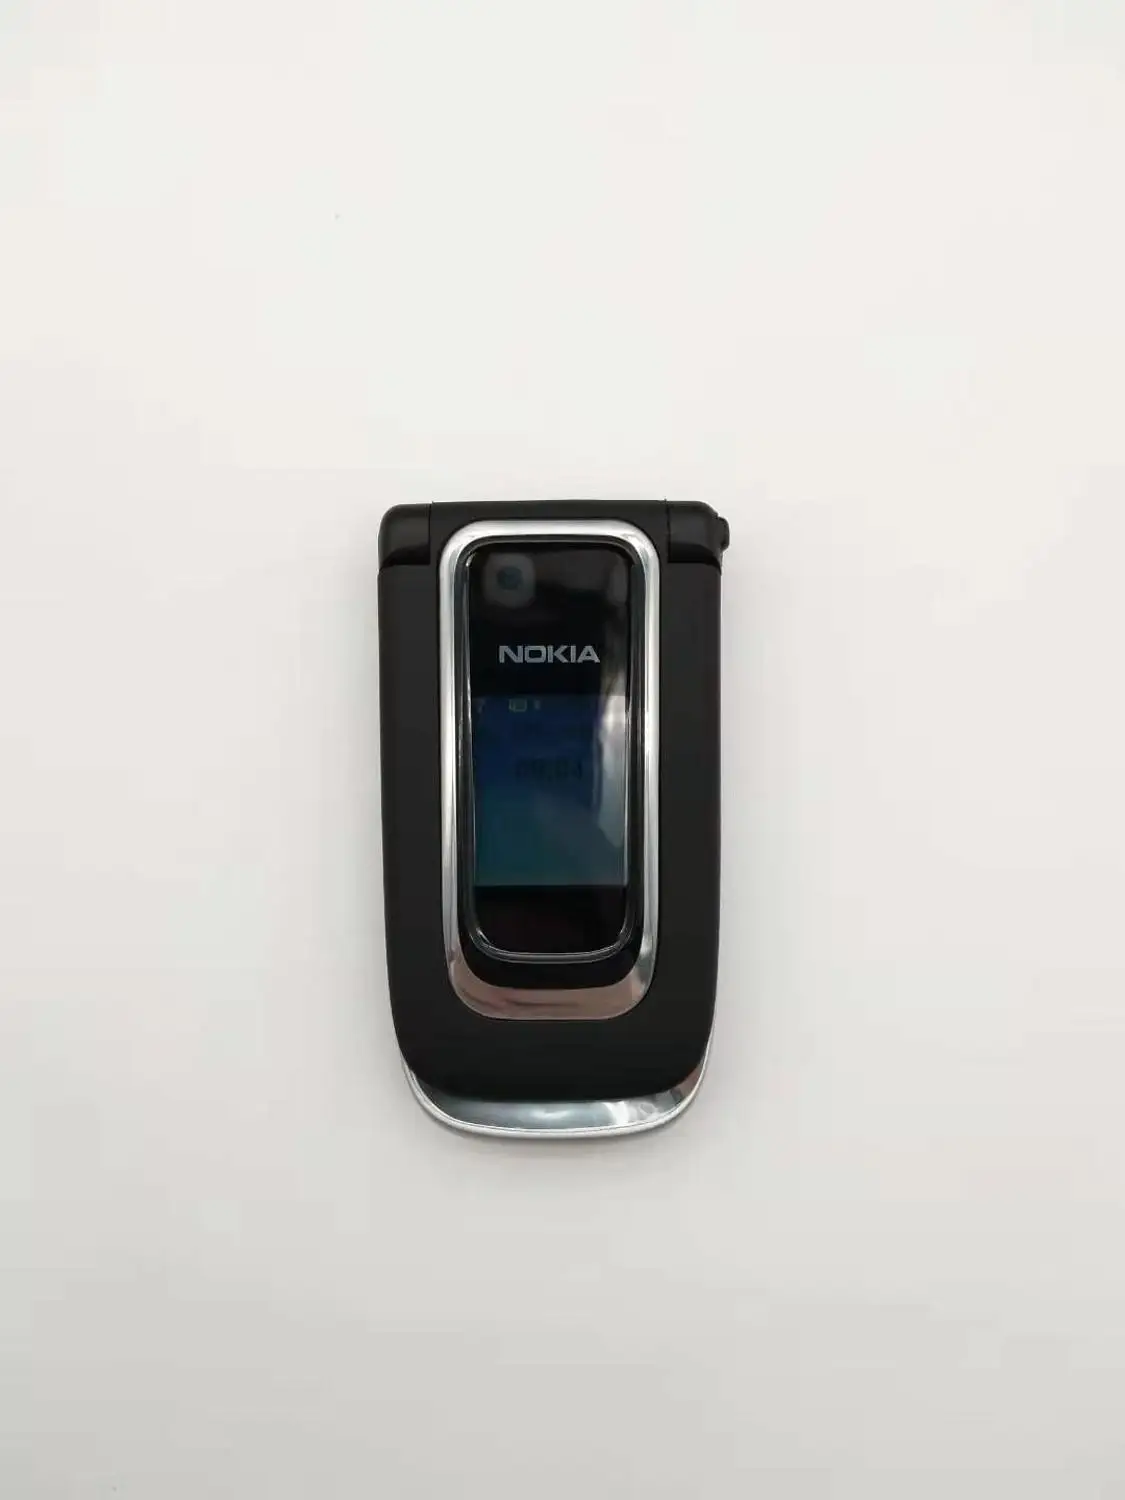 Отремонтированный мобильный телефон Nokia 6131 2G GSM разблокированный флип-телефон Английский Арабский Иврит русская клавиатура - Цвет: Черный